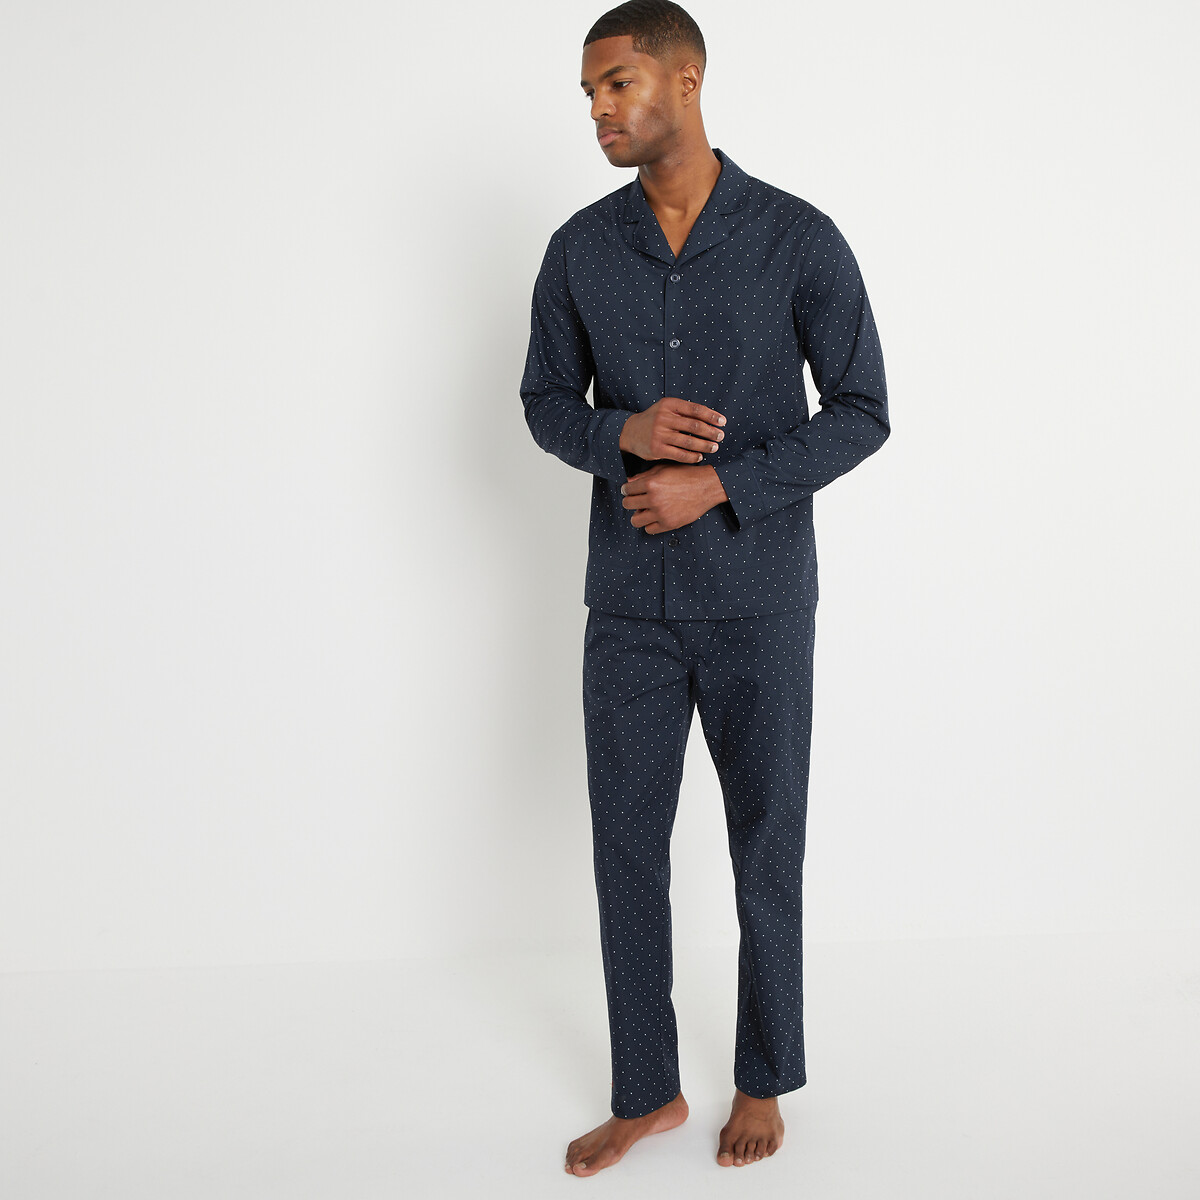 Пижама с принтом в горошек верх на пуговицах брюки прямого покроя  M синий LaRedoute, размер M